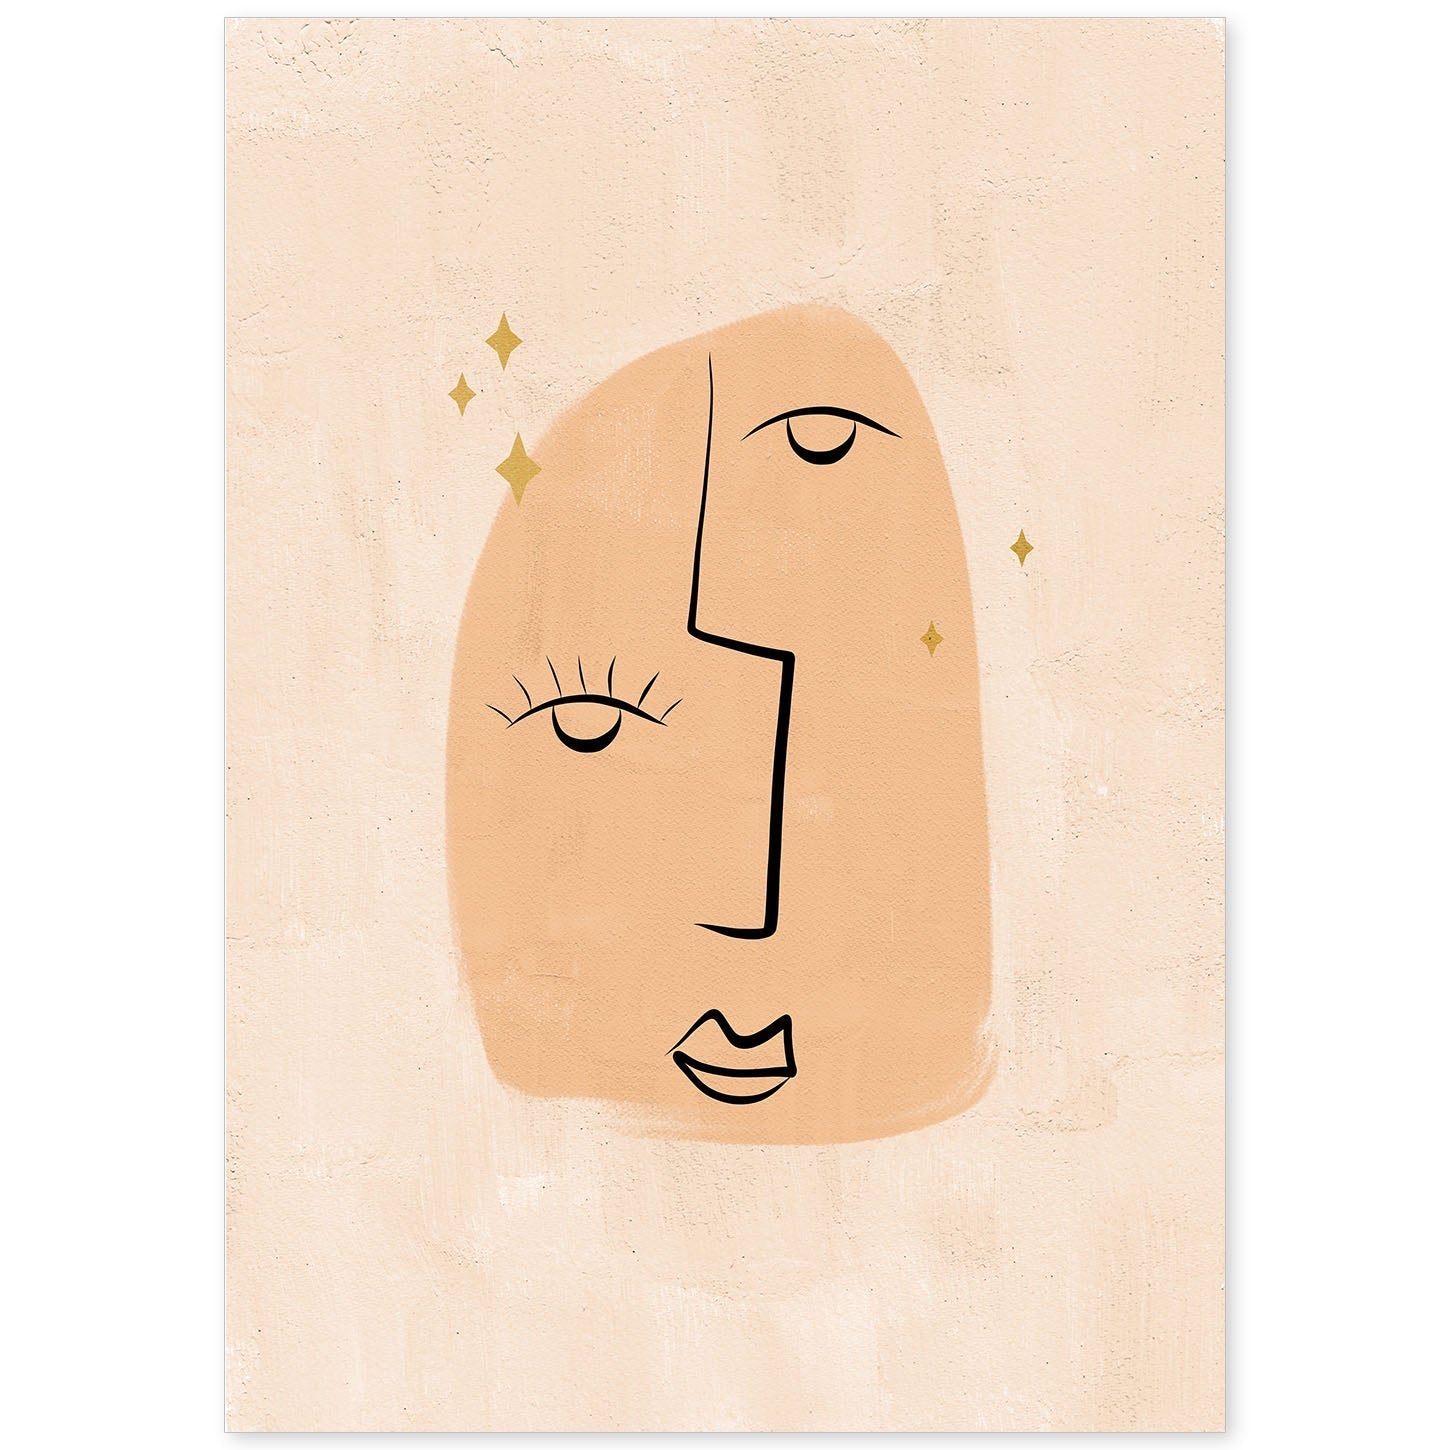 Poster con ilustracion de mujer. Dibujos con formas, caras, cuerpos y gestos de mujeres. 'Mujeres 24'.-Artwork-Nacnic-A4-Sin marco-Nacnic Estudio SL